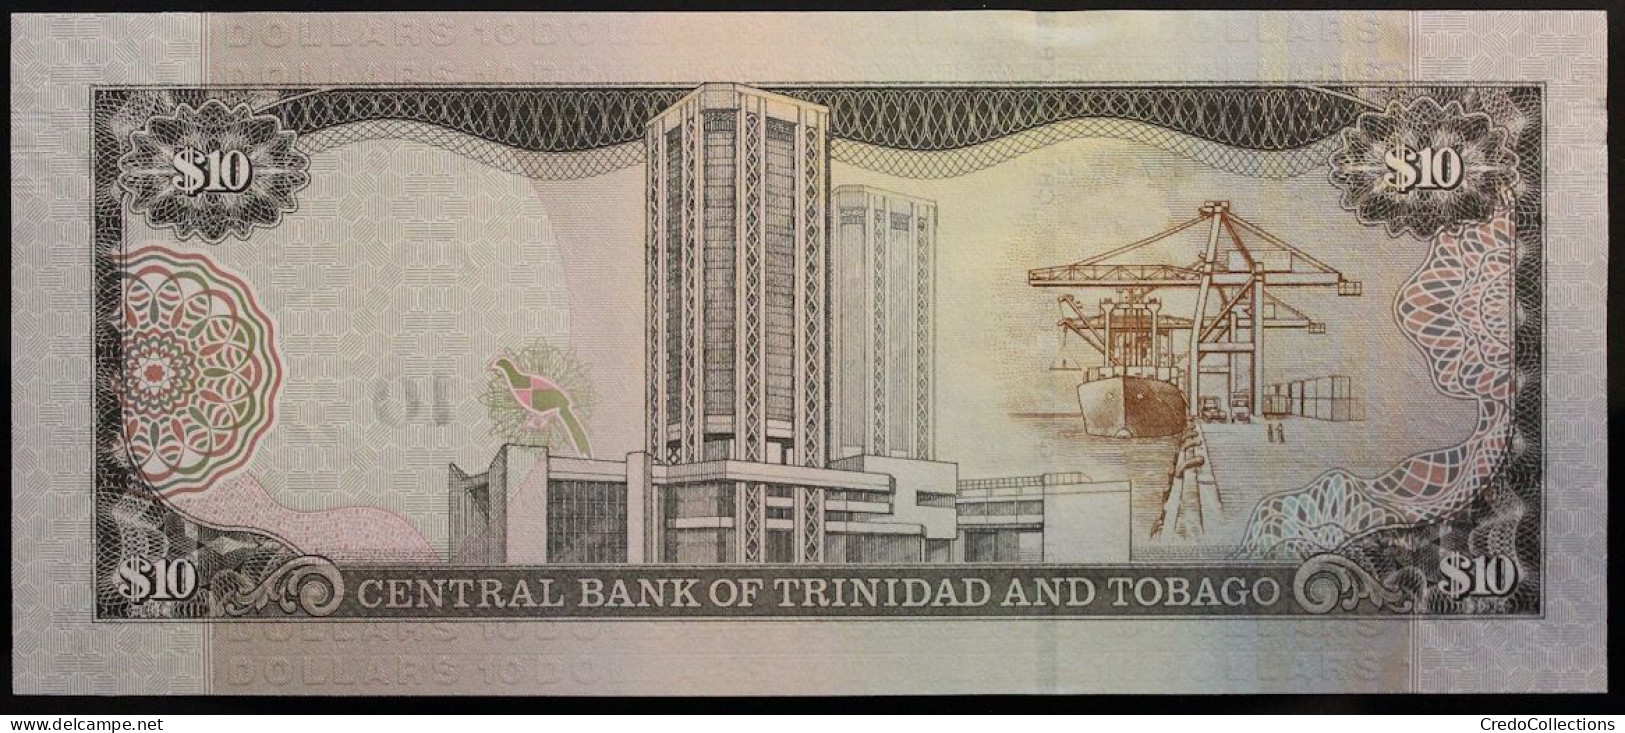 Trinitad Et Tobago - 10 Dollars - 2016 - PICK 57b - NEUF - Trinité & Tobago